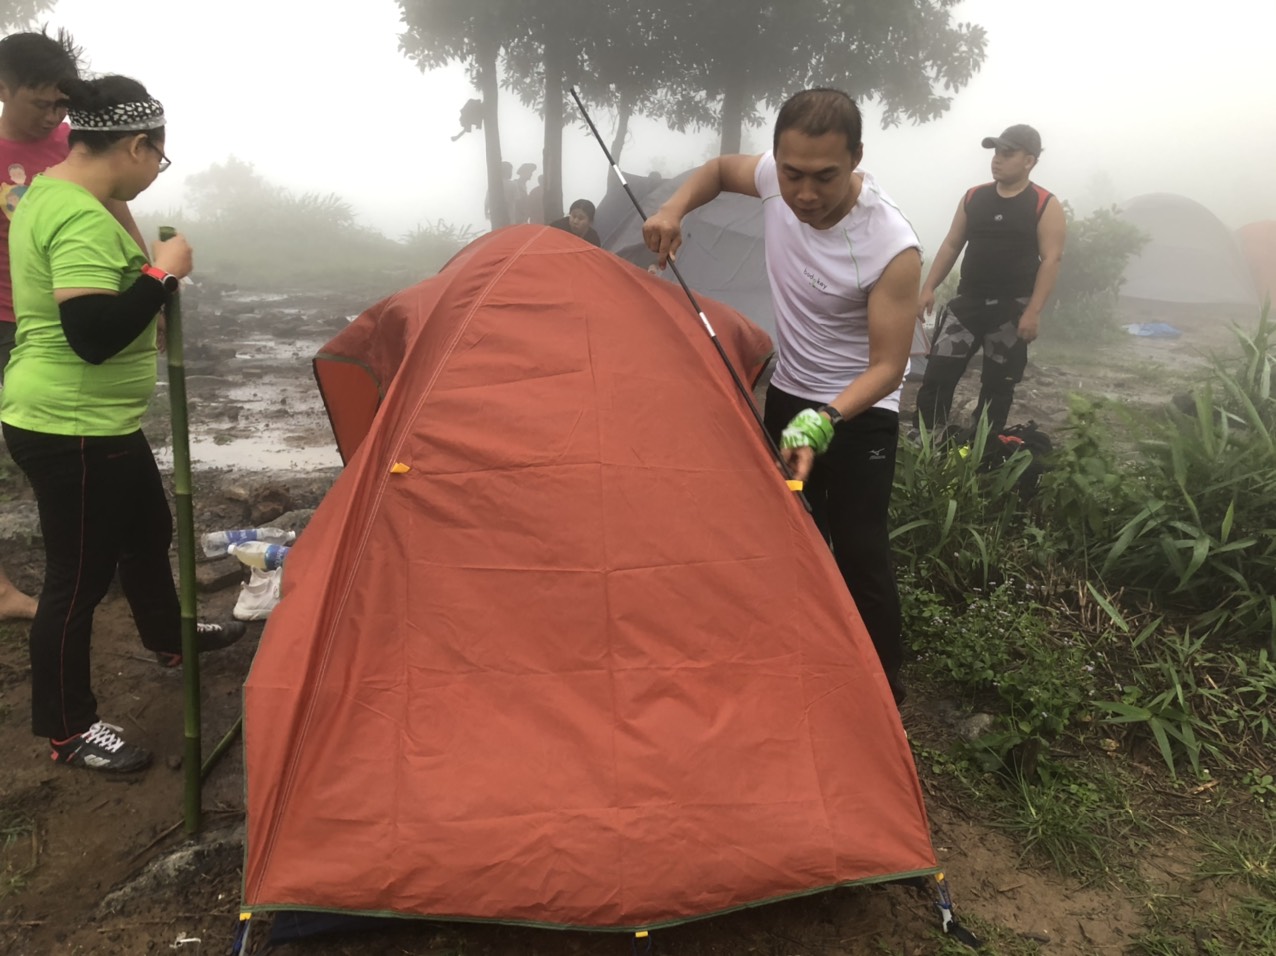 Team Prosumer chinh phục đỉnh núi Chứa Chan - Gia Lào